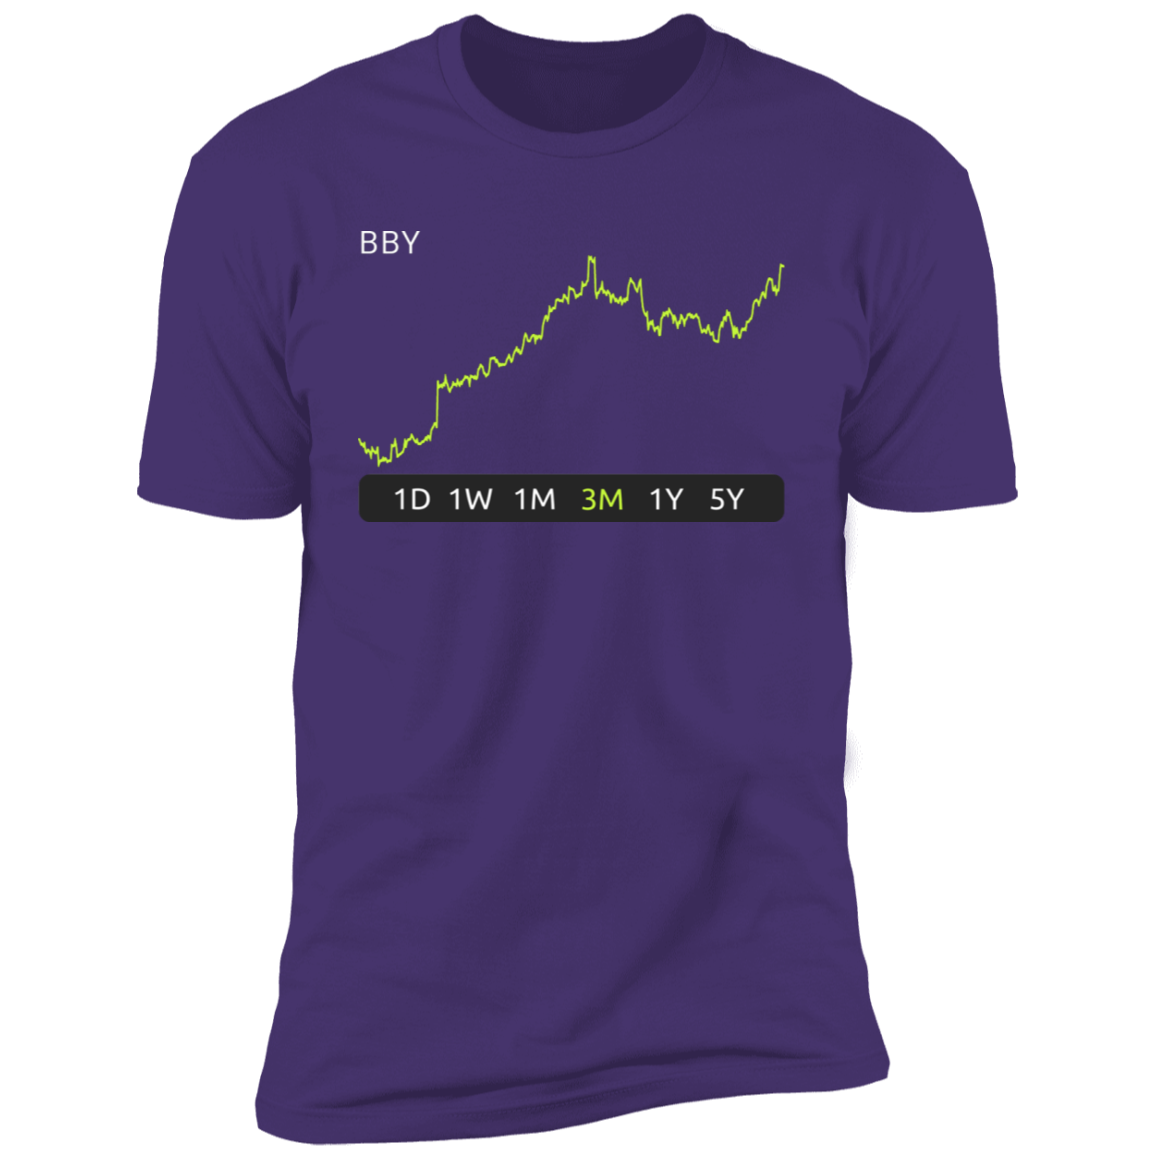 BBY Stock 3m Premium T-Shirt